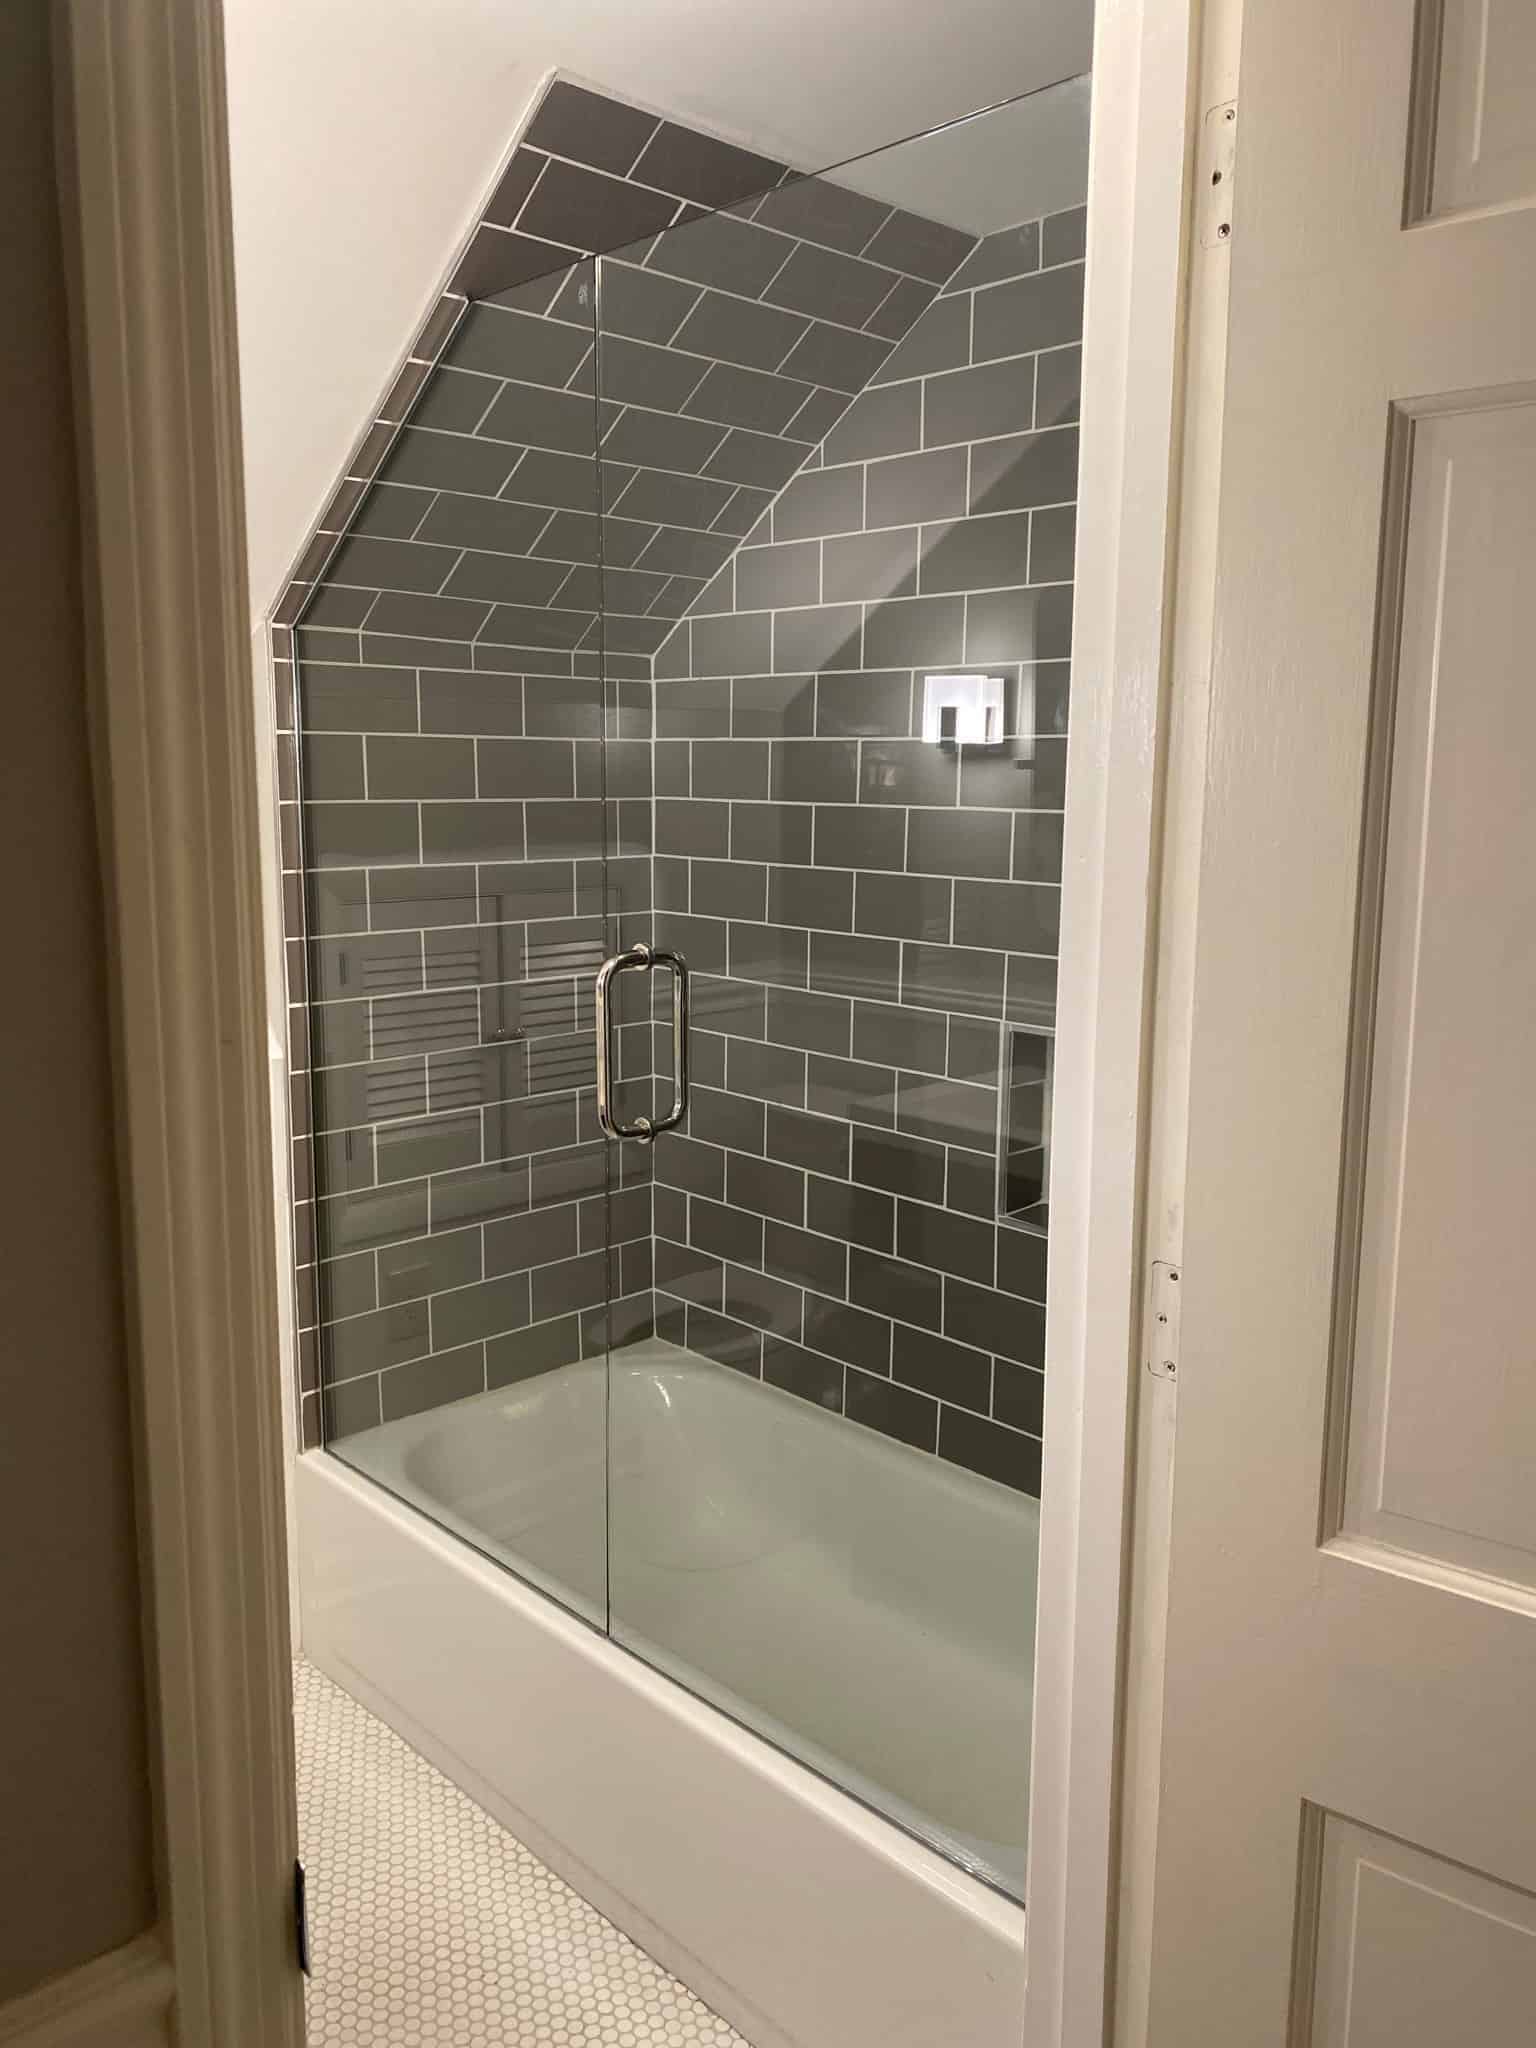 Custom shower door with pull handle in grey tiled bathroom from Aldora